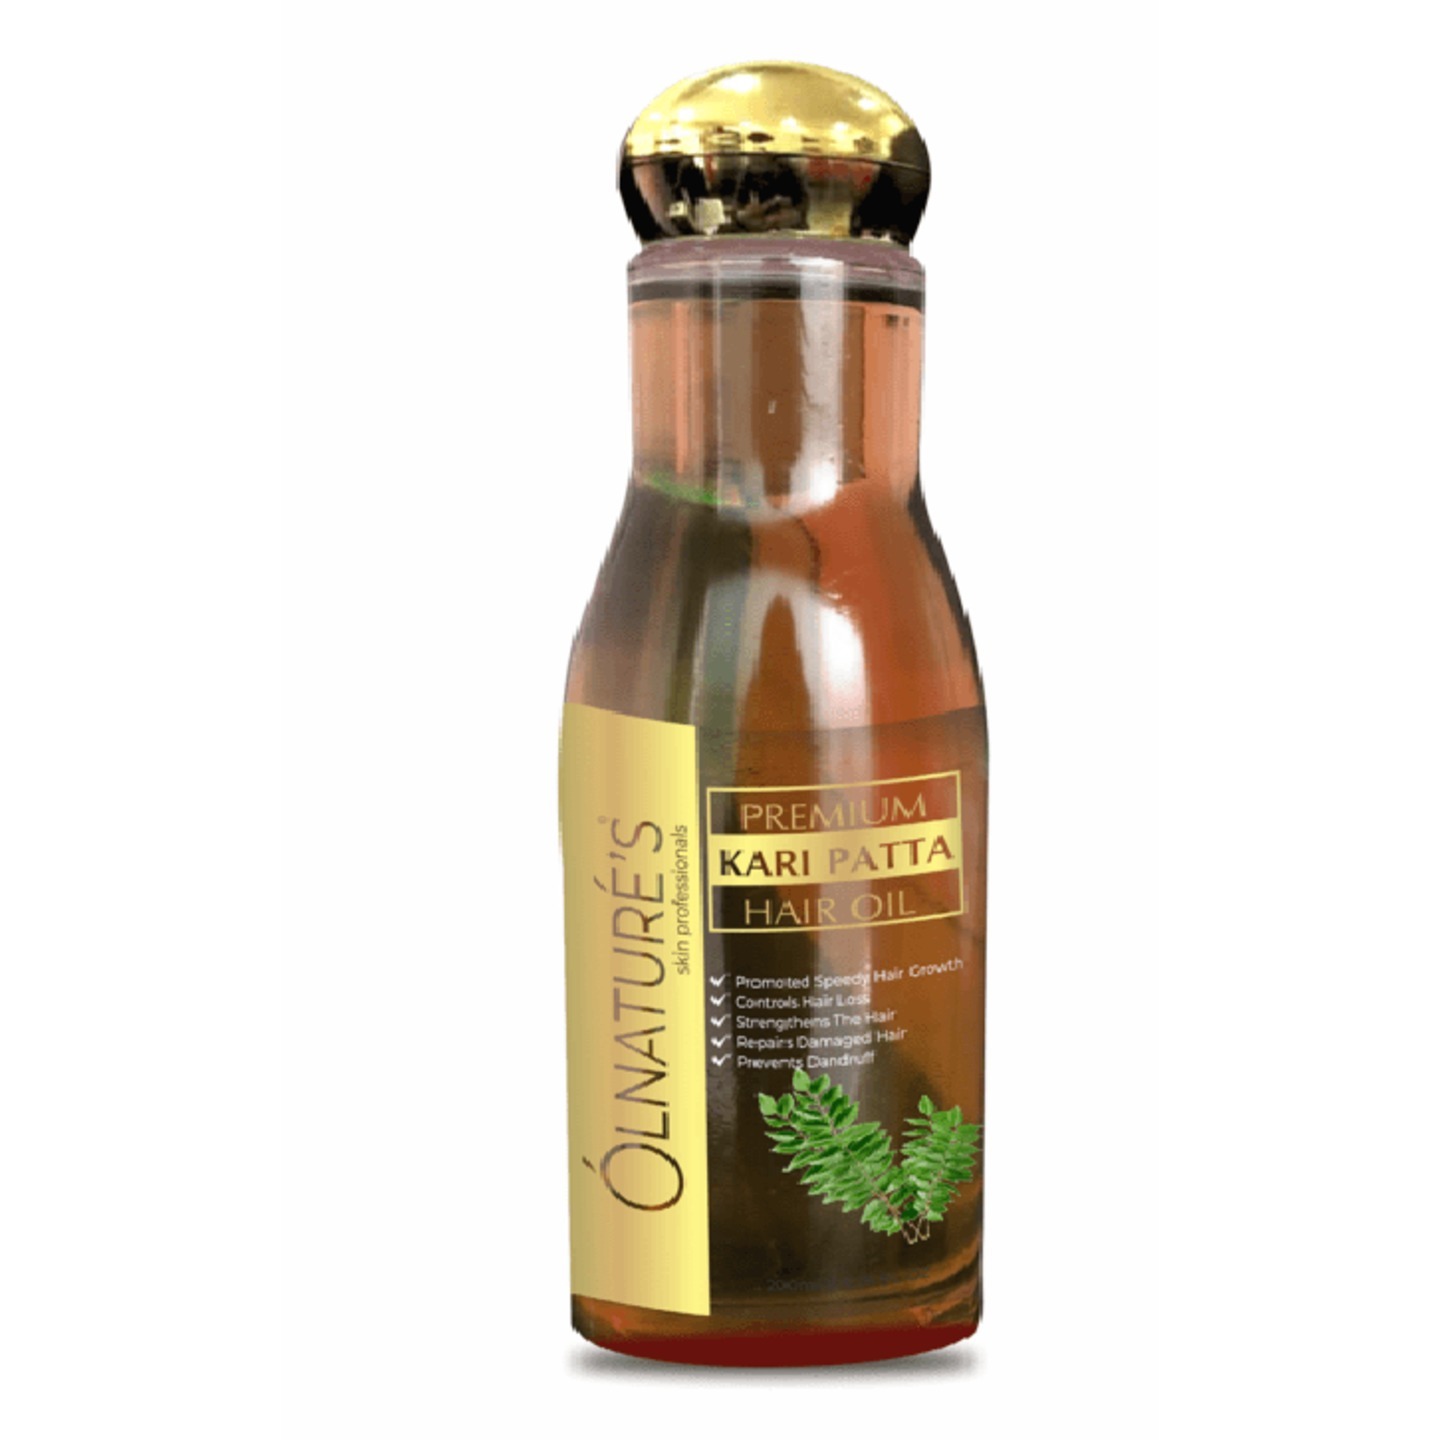 Olnatures Premium Curry Patta Hair Oil